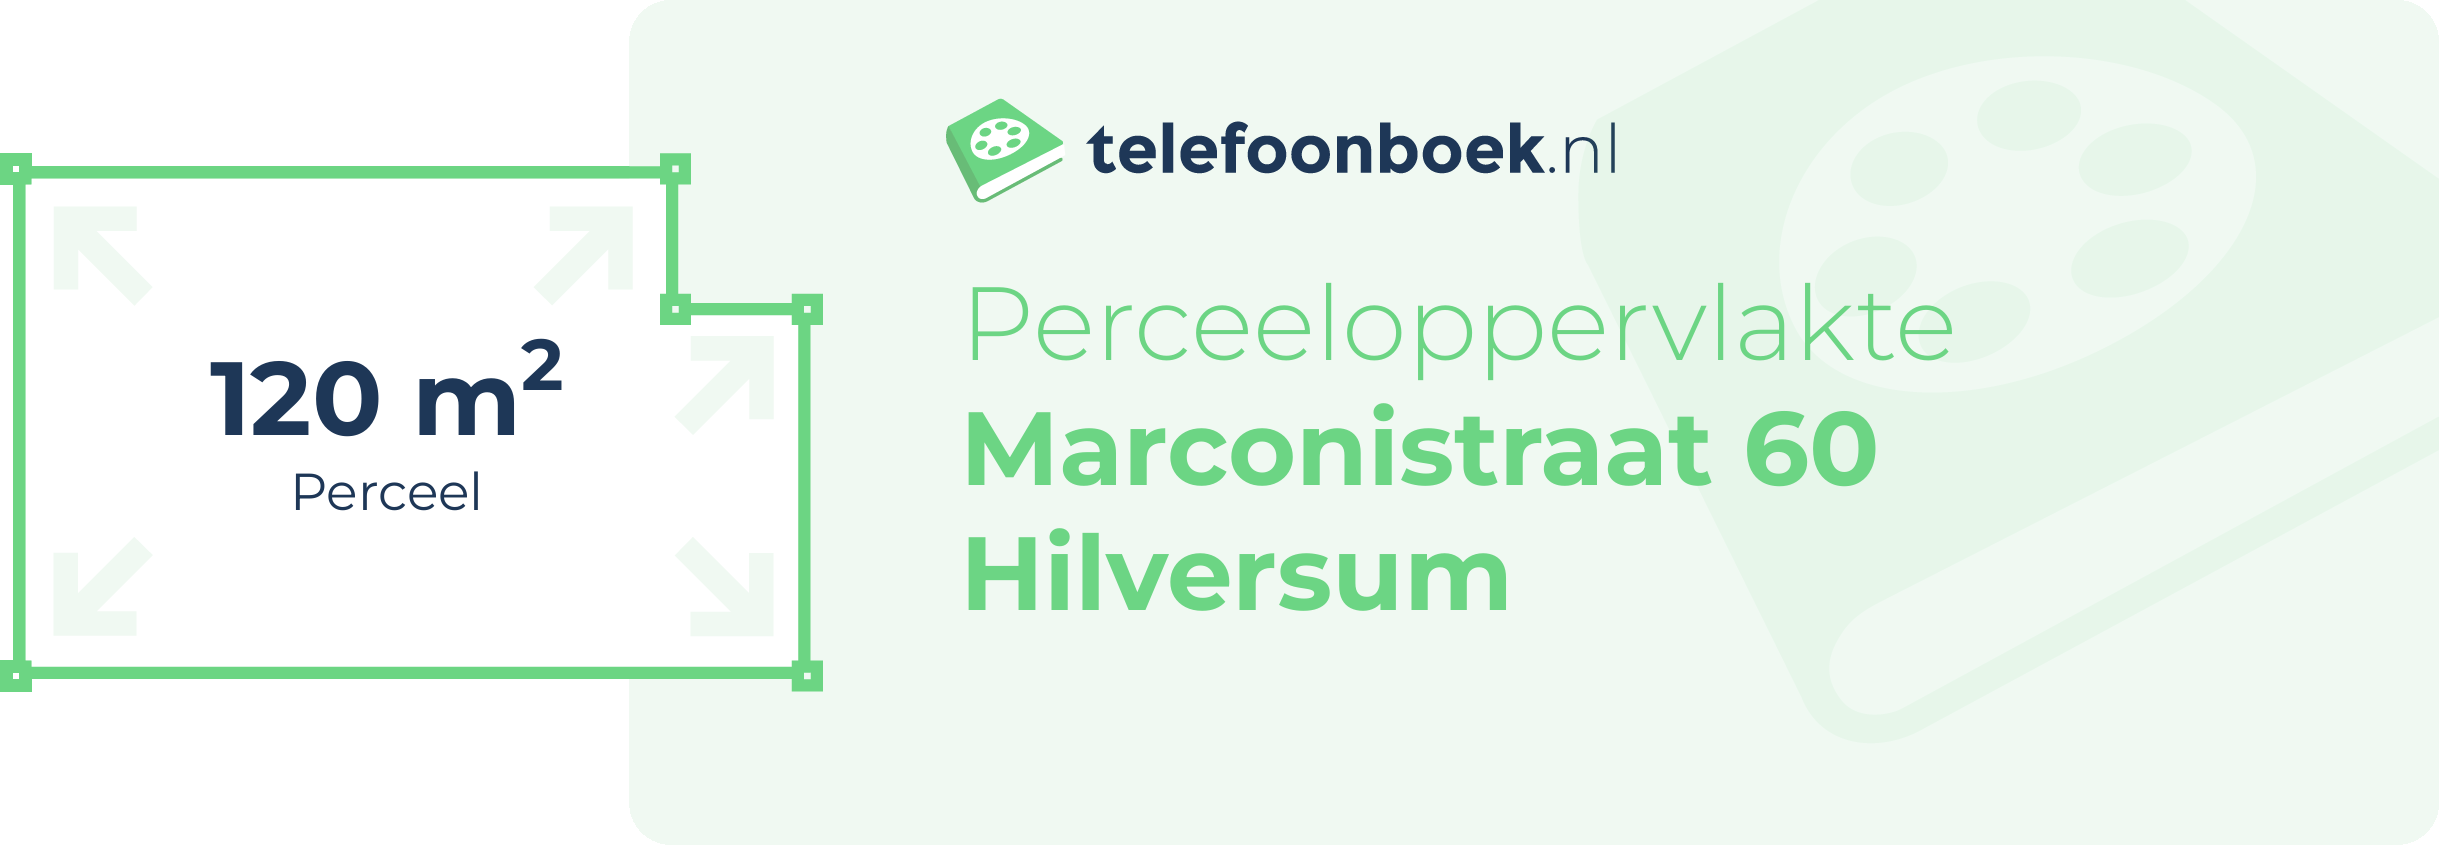 Perceeloppervlakte Marconistraat 60 Hilversum